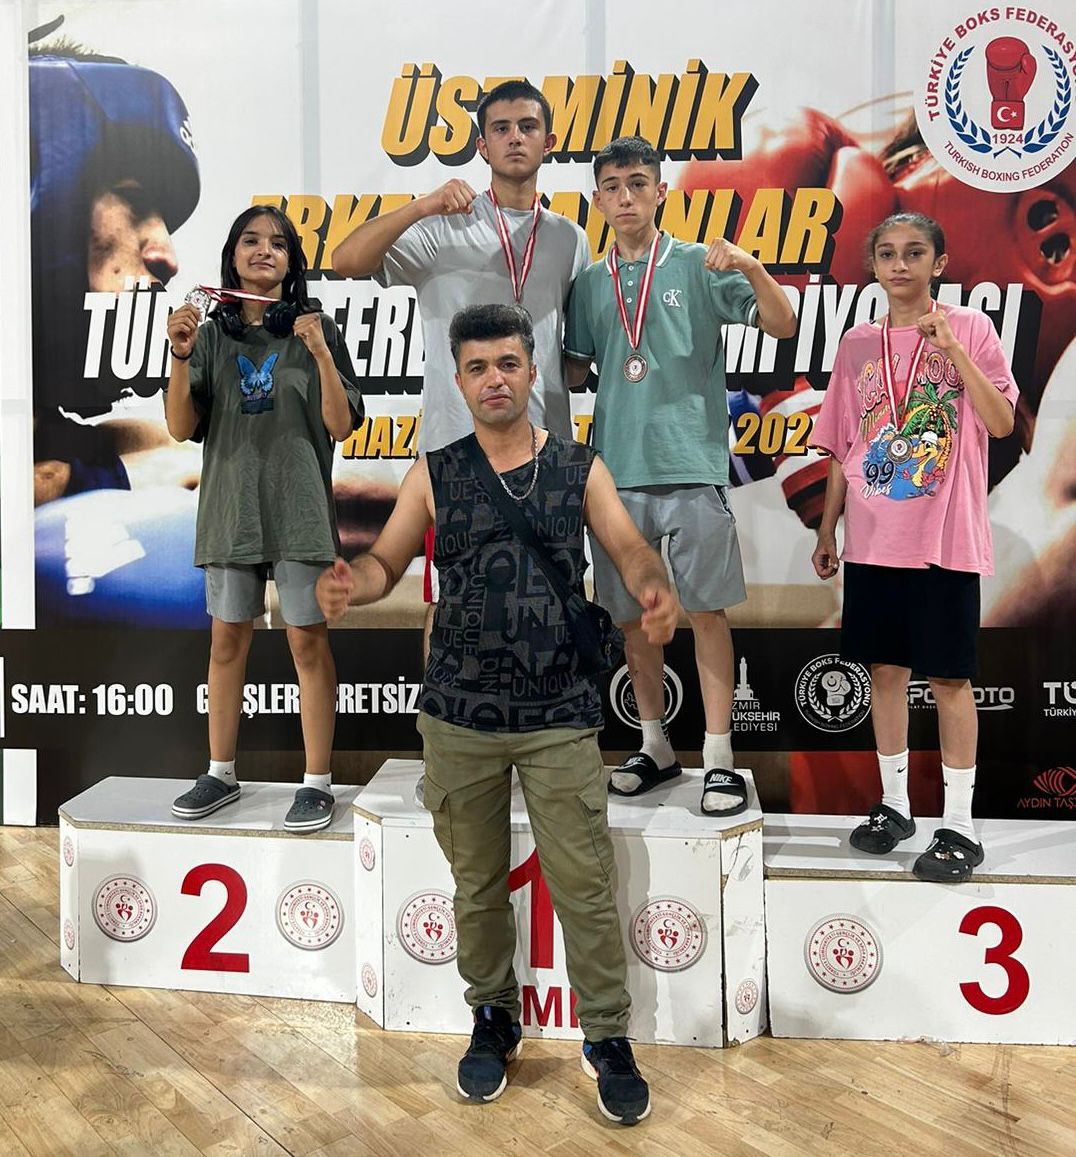 Türkiye Ferdi Boks Şampiyonası’na katılan Kayserili sporcular 4 madalya ile döndü